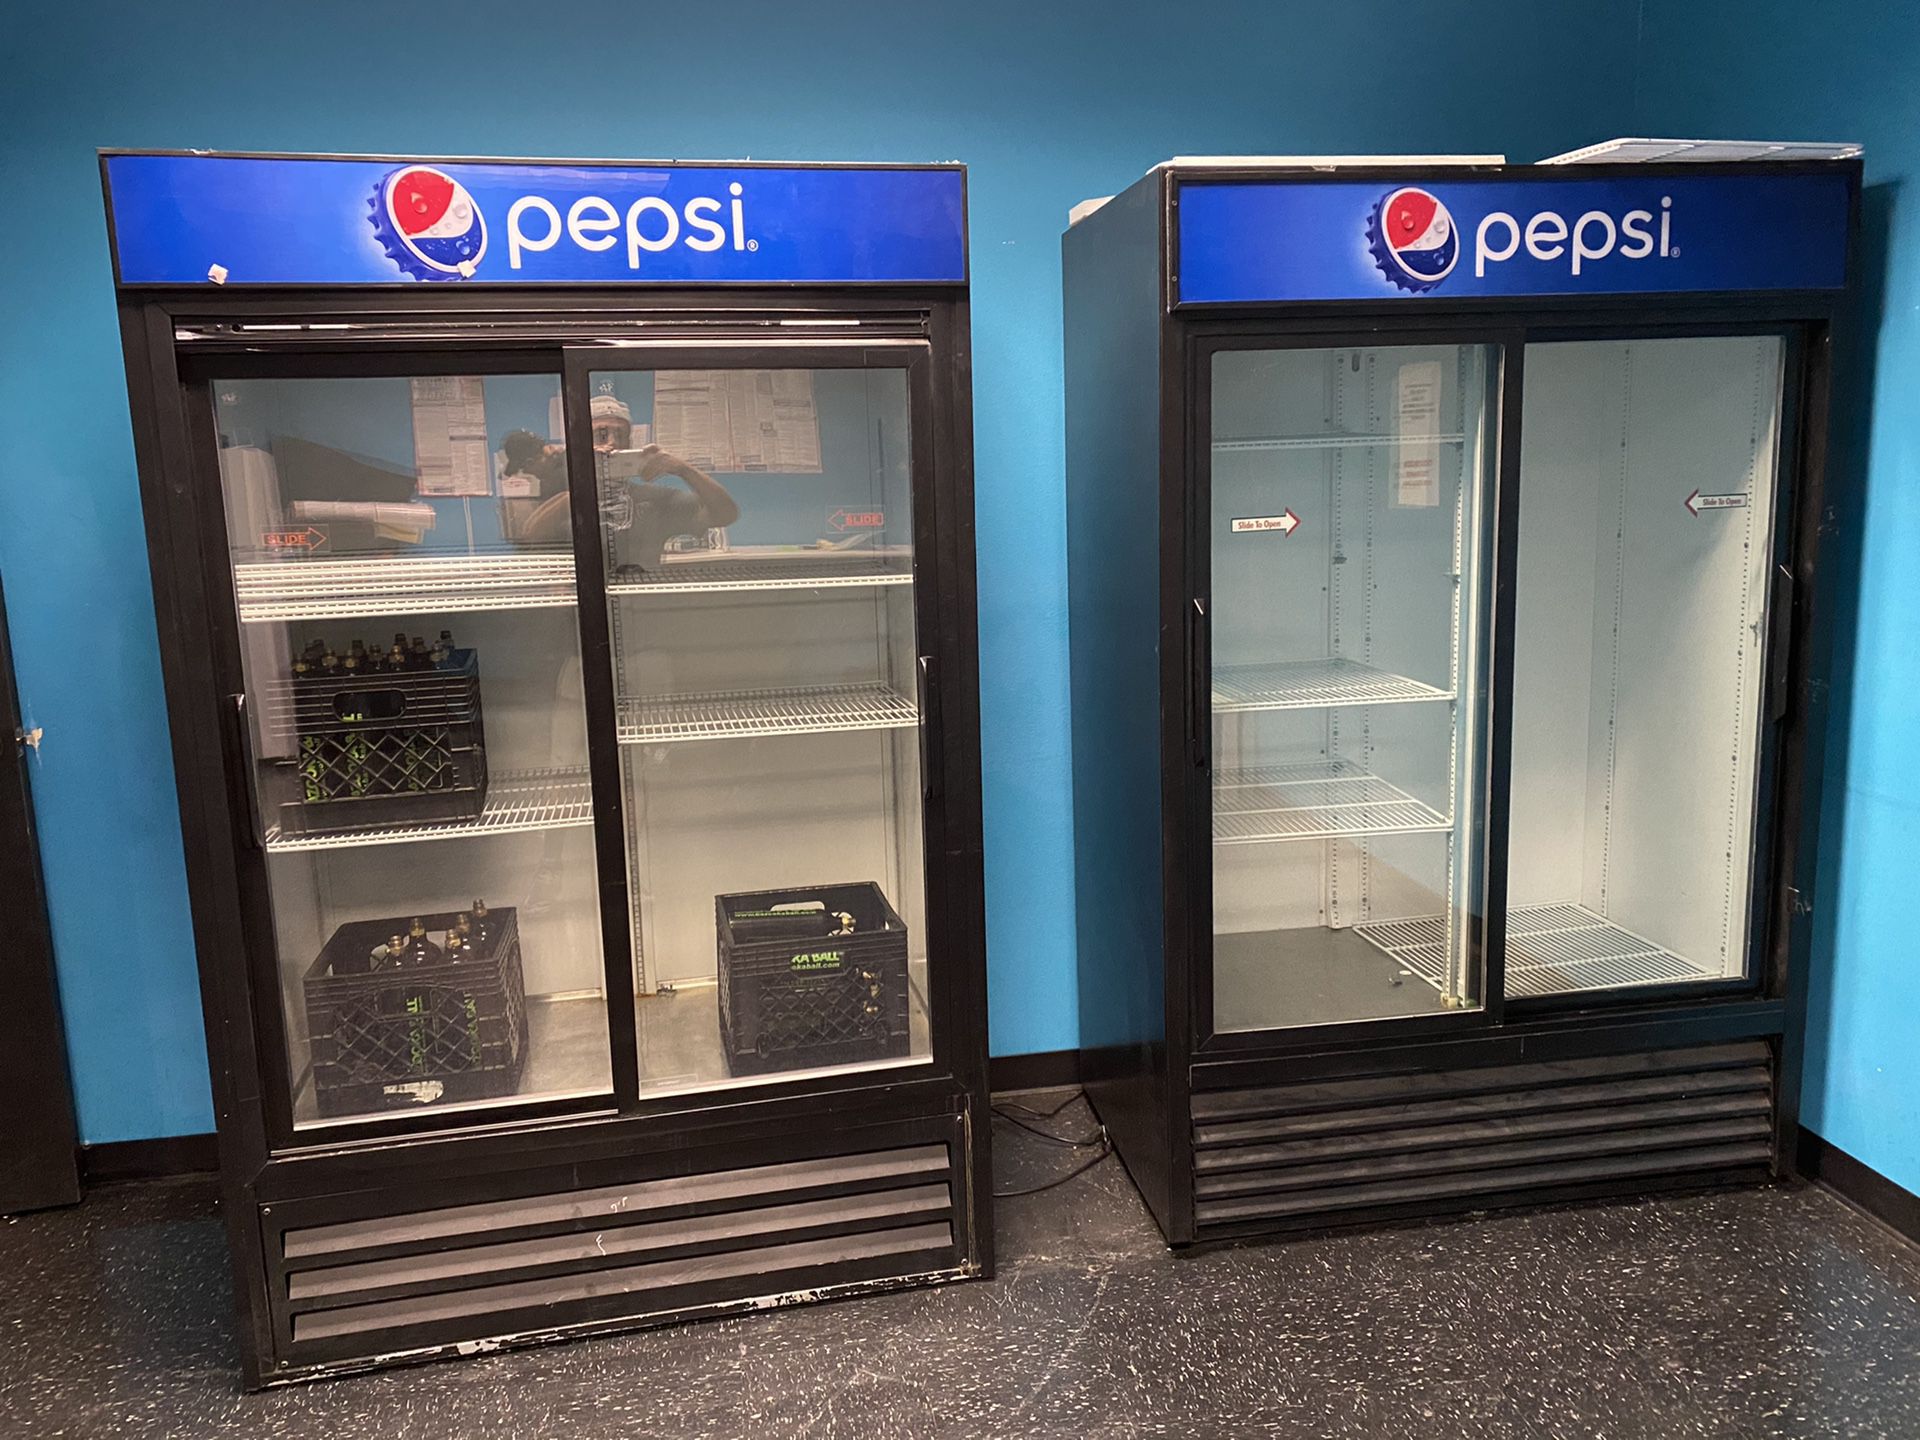 Pepsi Large Commercial Restaurant Beverage Cooler Refrigerator Freezer